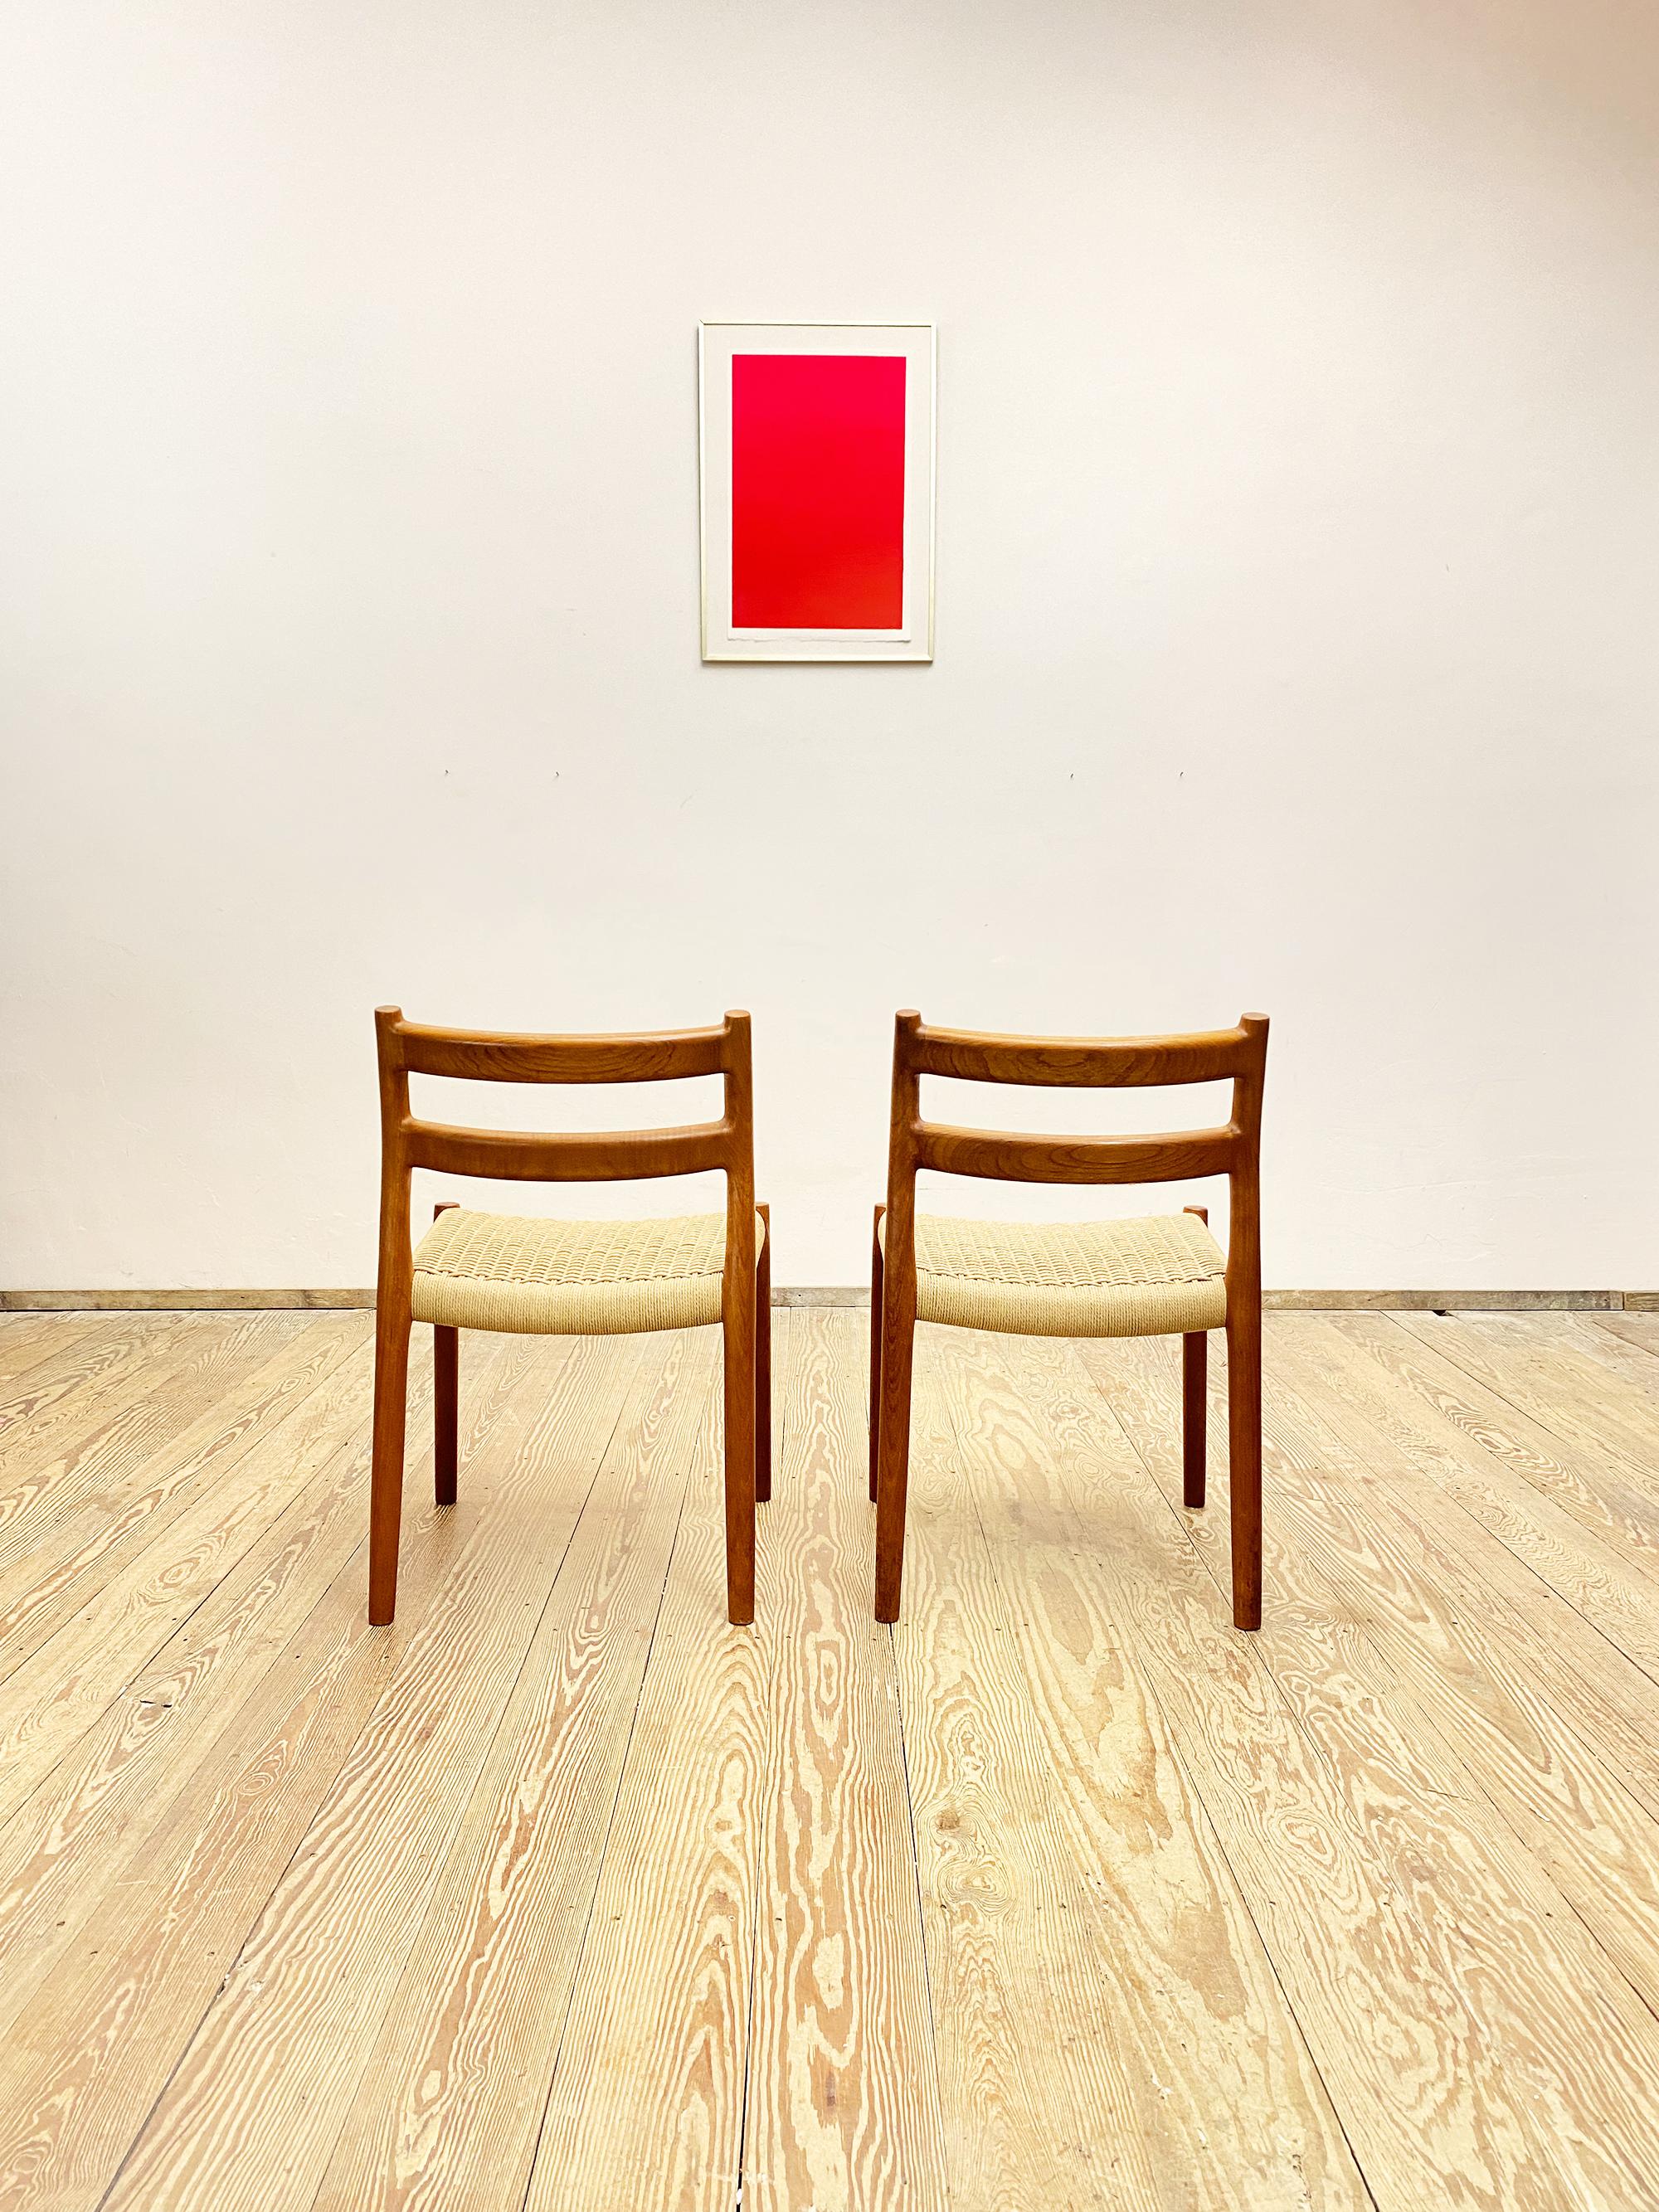 Abmessungen: 50 x 50 x 79 x 44cm (Breite x Tiefe x Höhe x Sitzhöhe)

Dieses Set skandinavischer Esszimmerstühle, entworfen von Niels O. Møller, wurde von J.L. hergestellt. Møllers in Dänemark. Das Set besteht aus 2 Stühlen des sehr seltenen